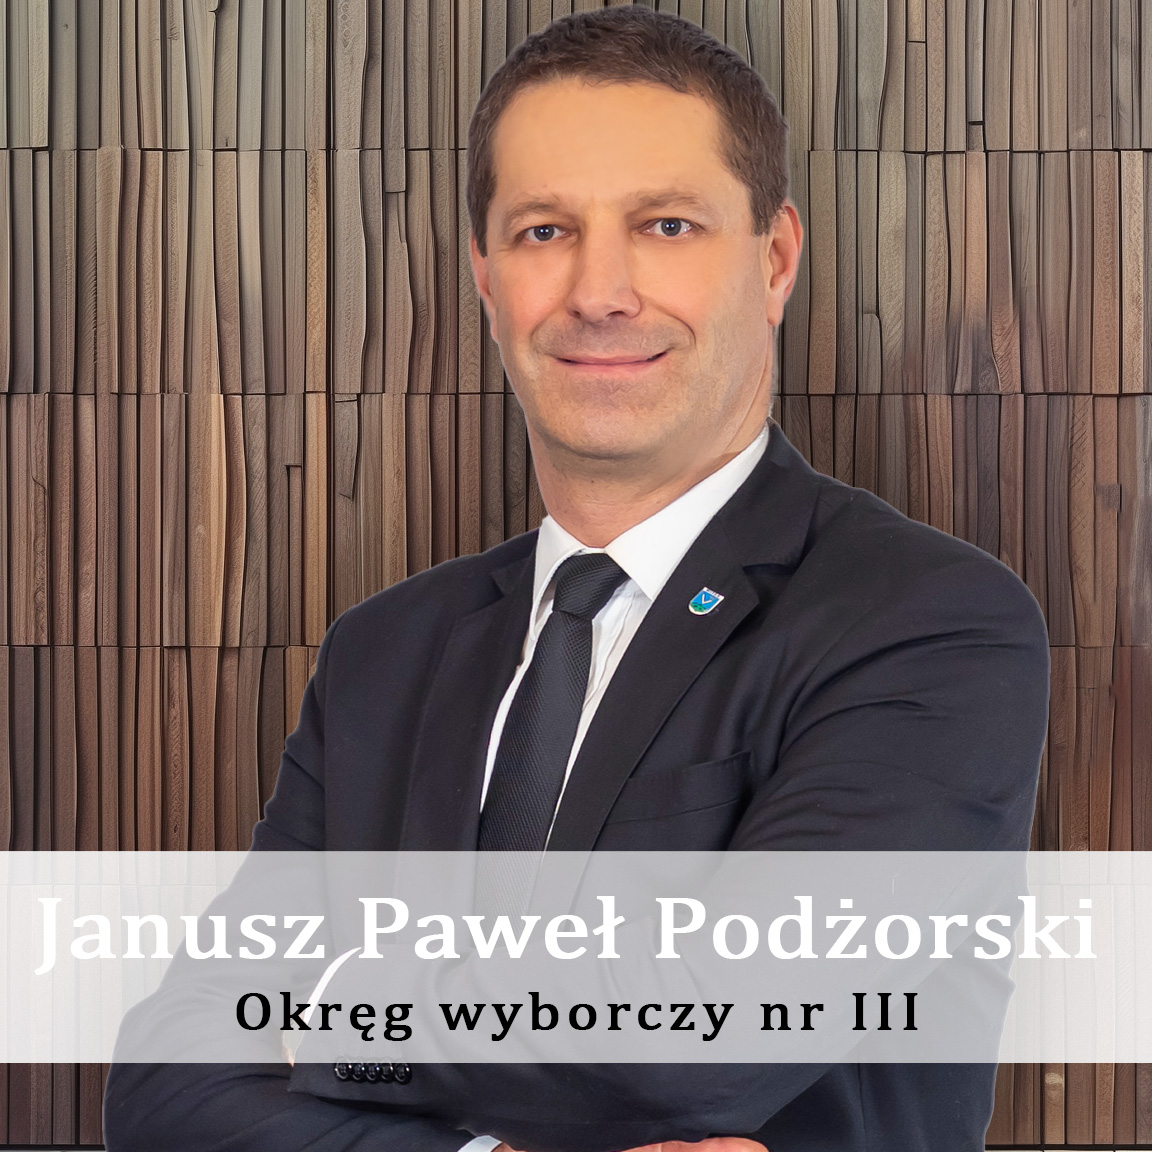 Janusz-Pawel-Podzorski-Okręg-wyporczy-nr-III-Radny-Miasto-Wisła